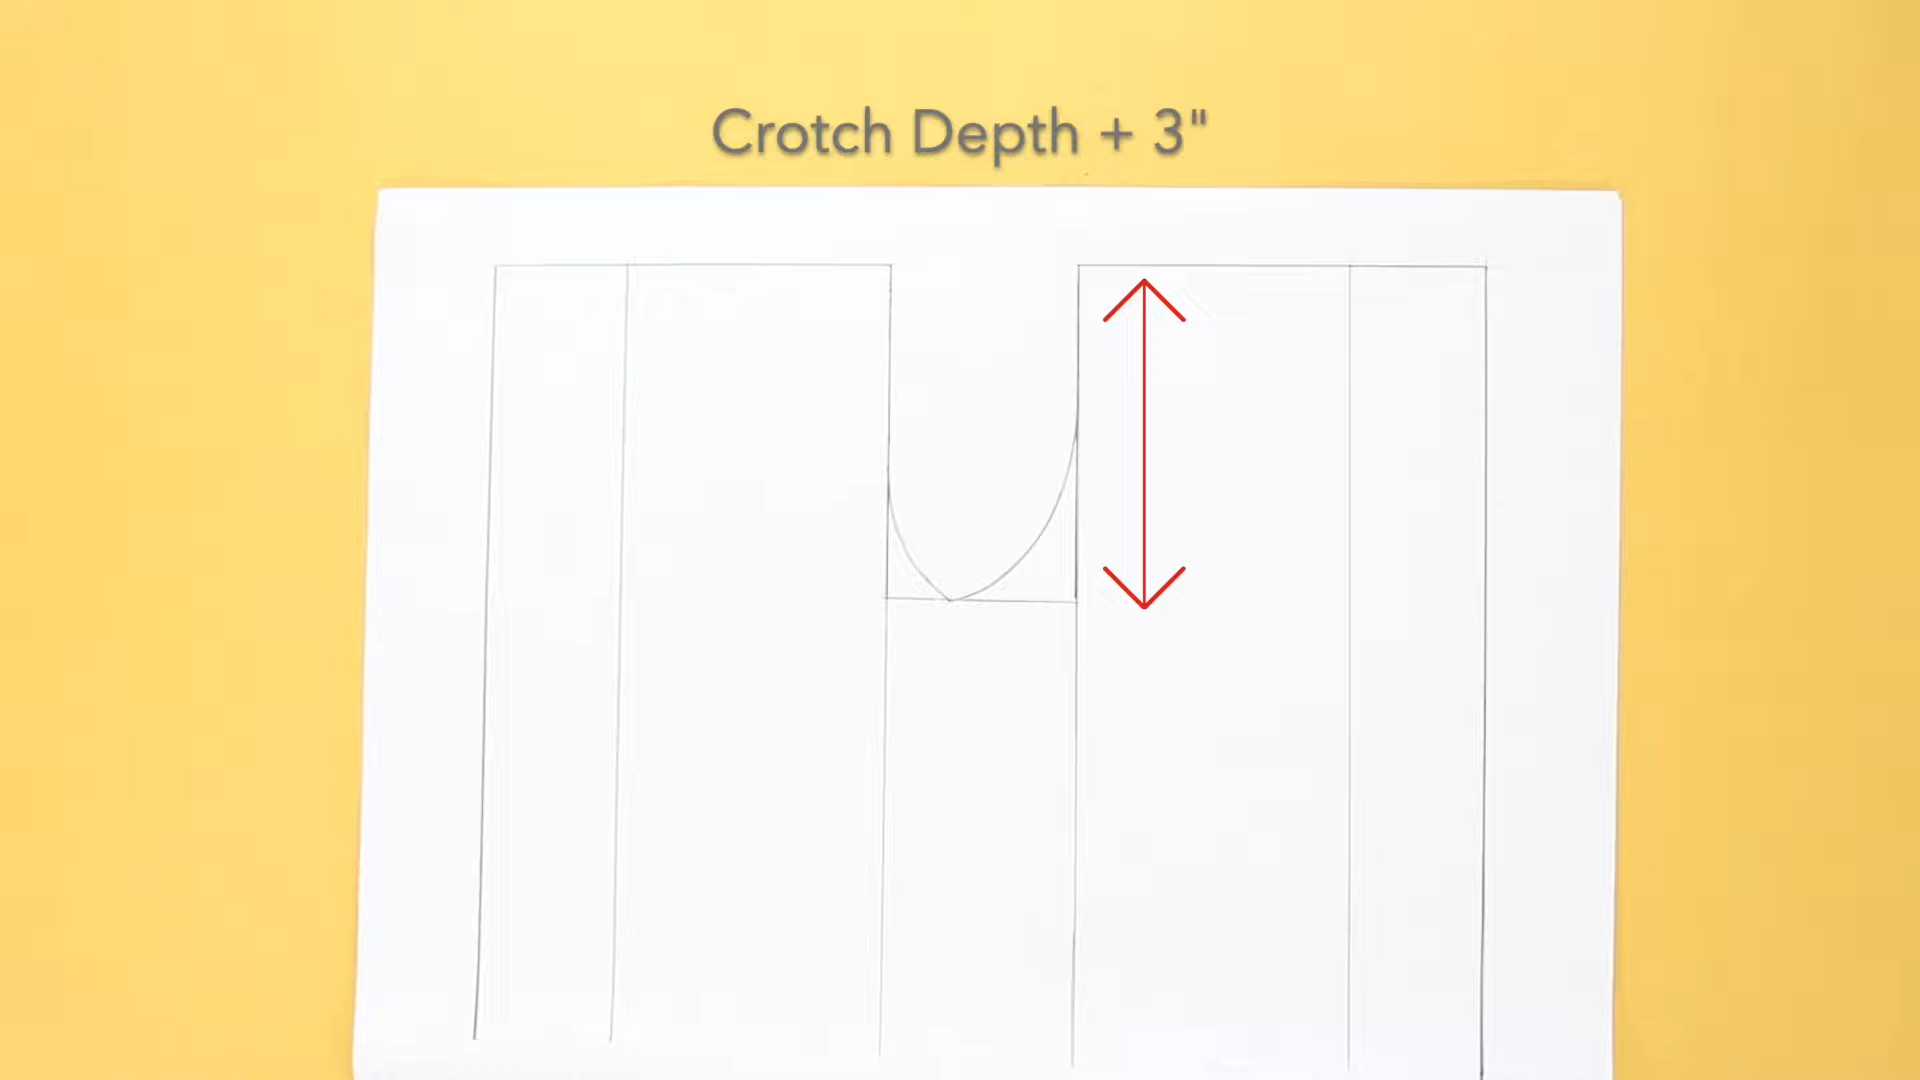 Crotch Depth +3"